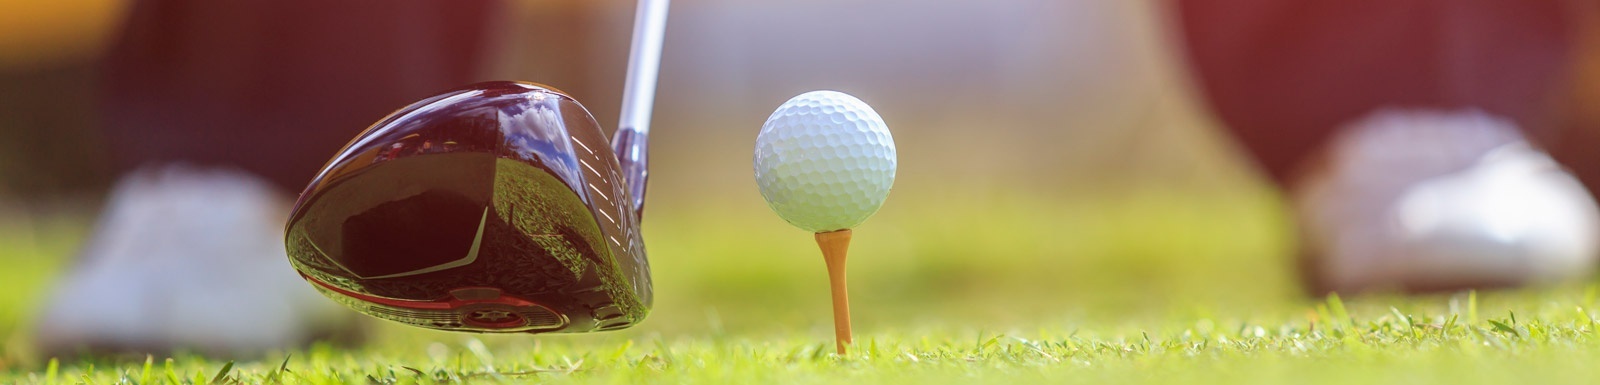 Ein Golfschläger schlägt einen Golfball auf einem T-Shirt auf einem Golfplatz .